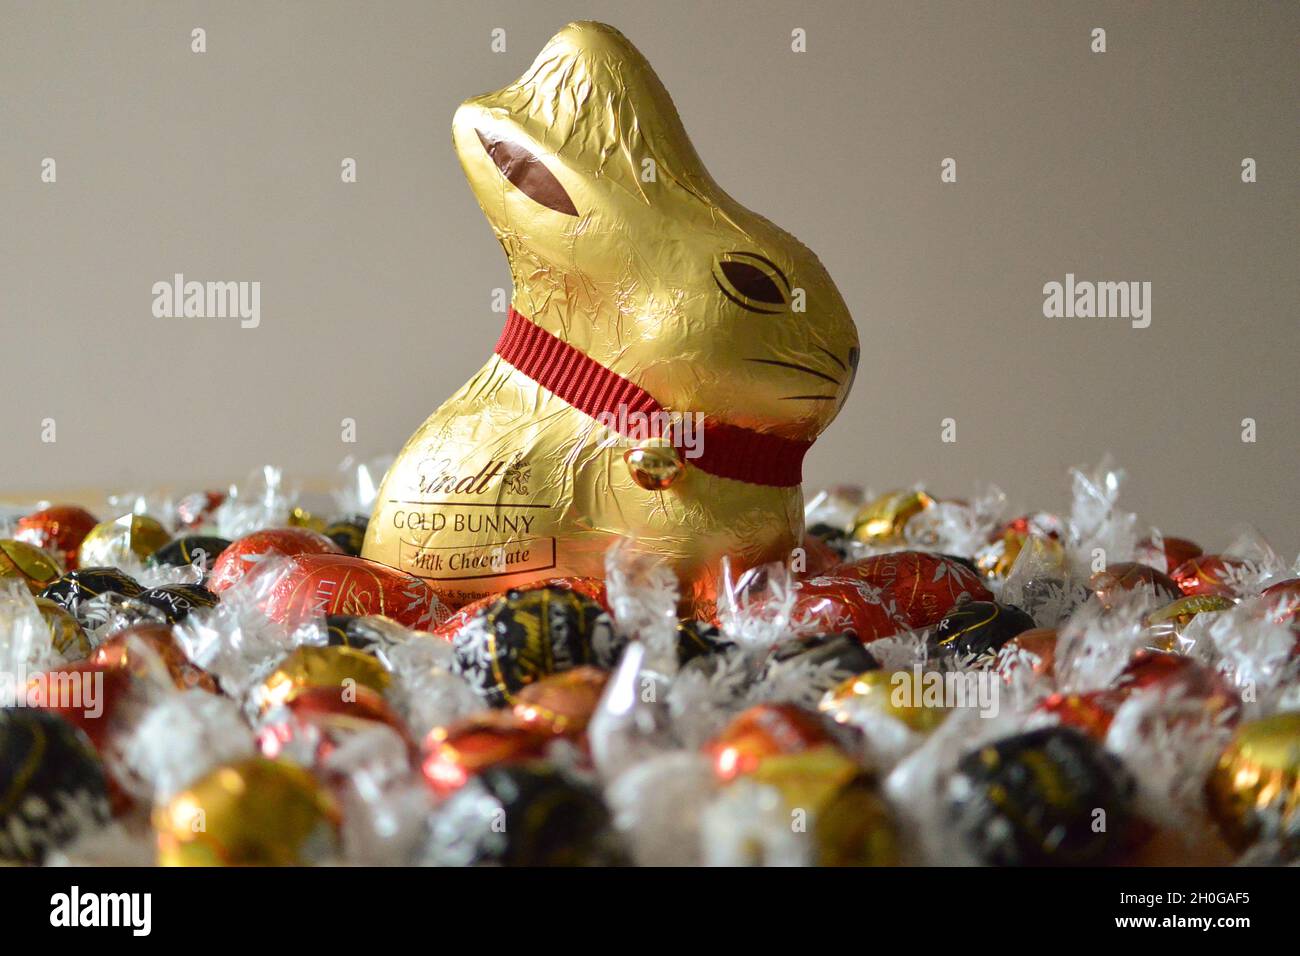 El icónico conejito de chocolate Lindt envuelto en papel de aluminio dorado con un distintivo cuello y campana rojos, rodeado de bolas de chocolate Lindor para Semana Santa Foto de stock